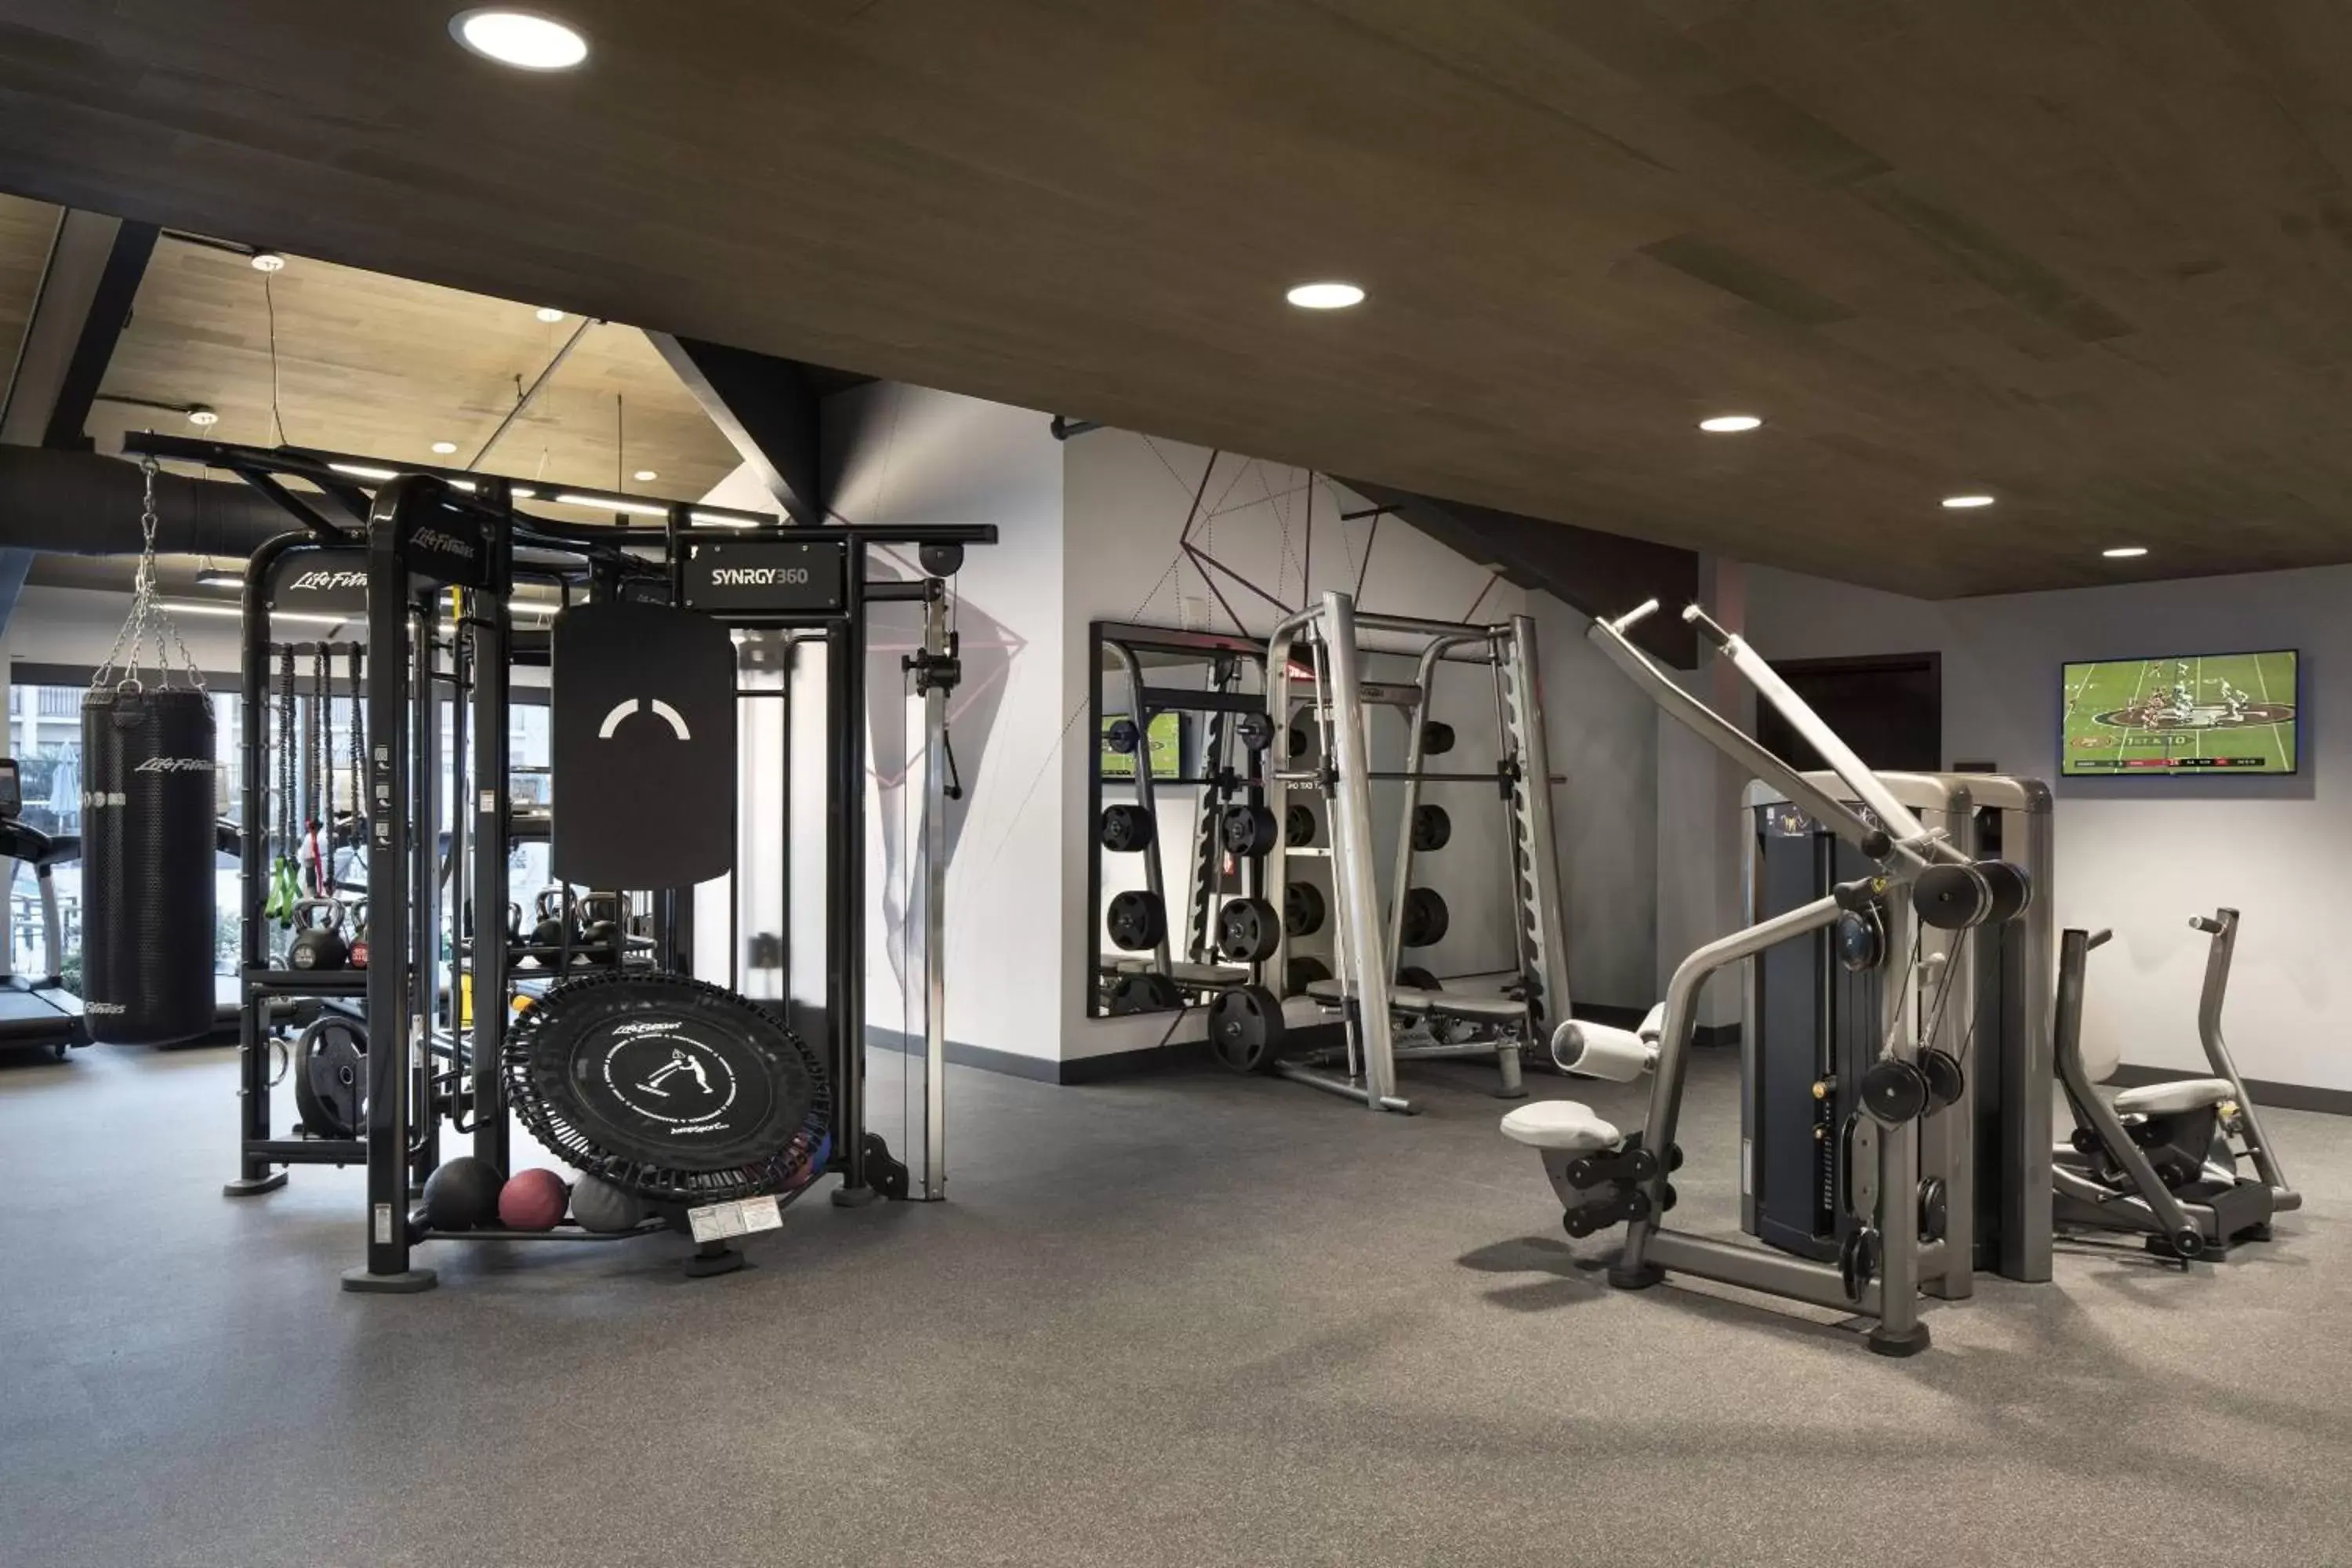 Fitness centre/facilities, Fitness Center/Facilities in Santa Clara Marriott